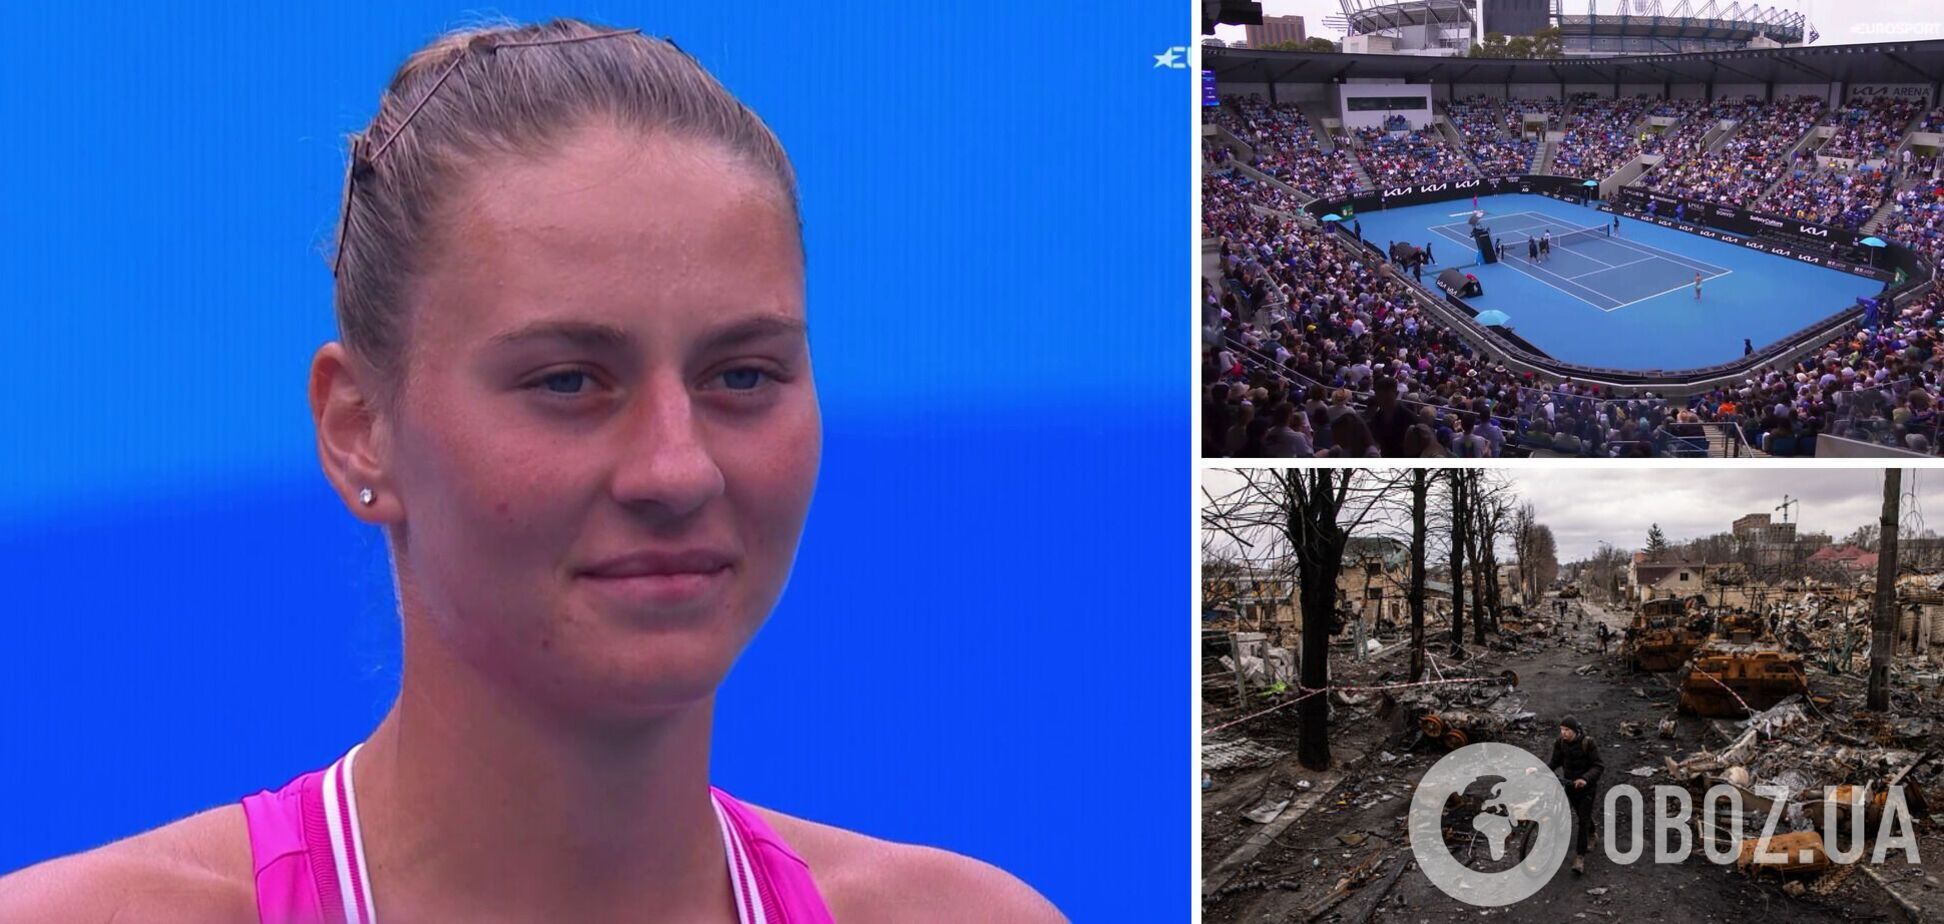 Скандал дня. На Australian Open назвали происходящее в Украине 'маленькой войной'. Видео